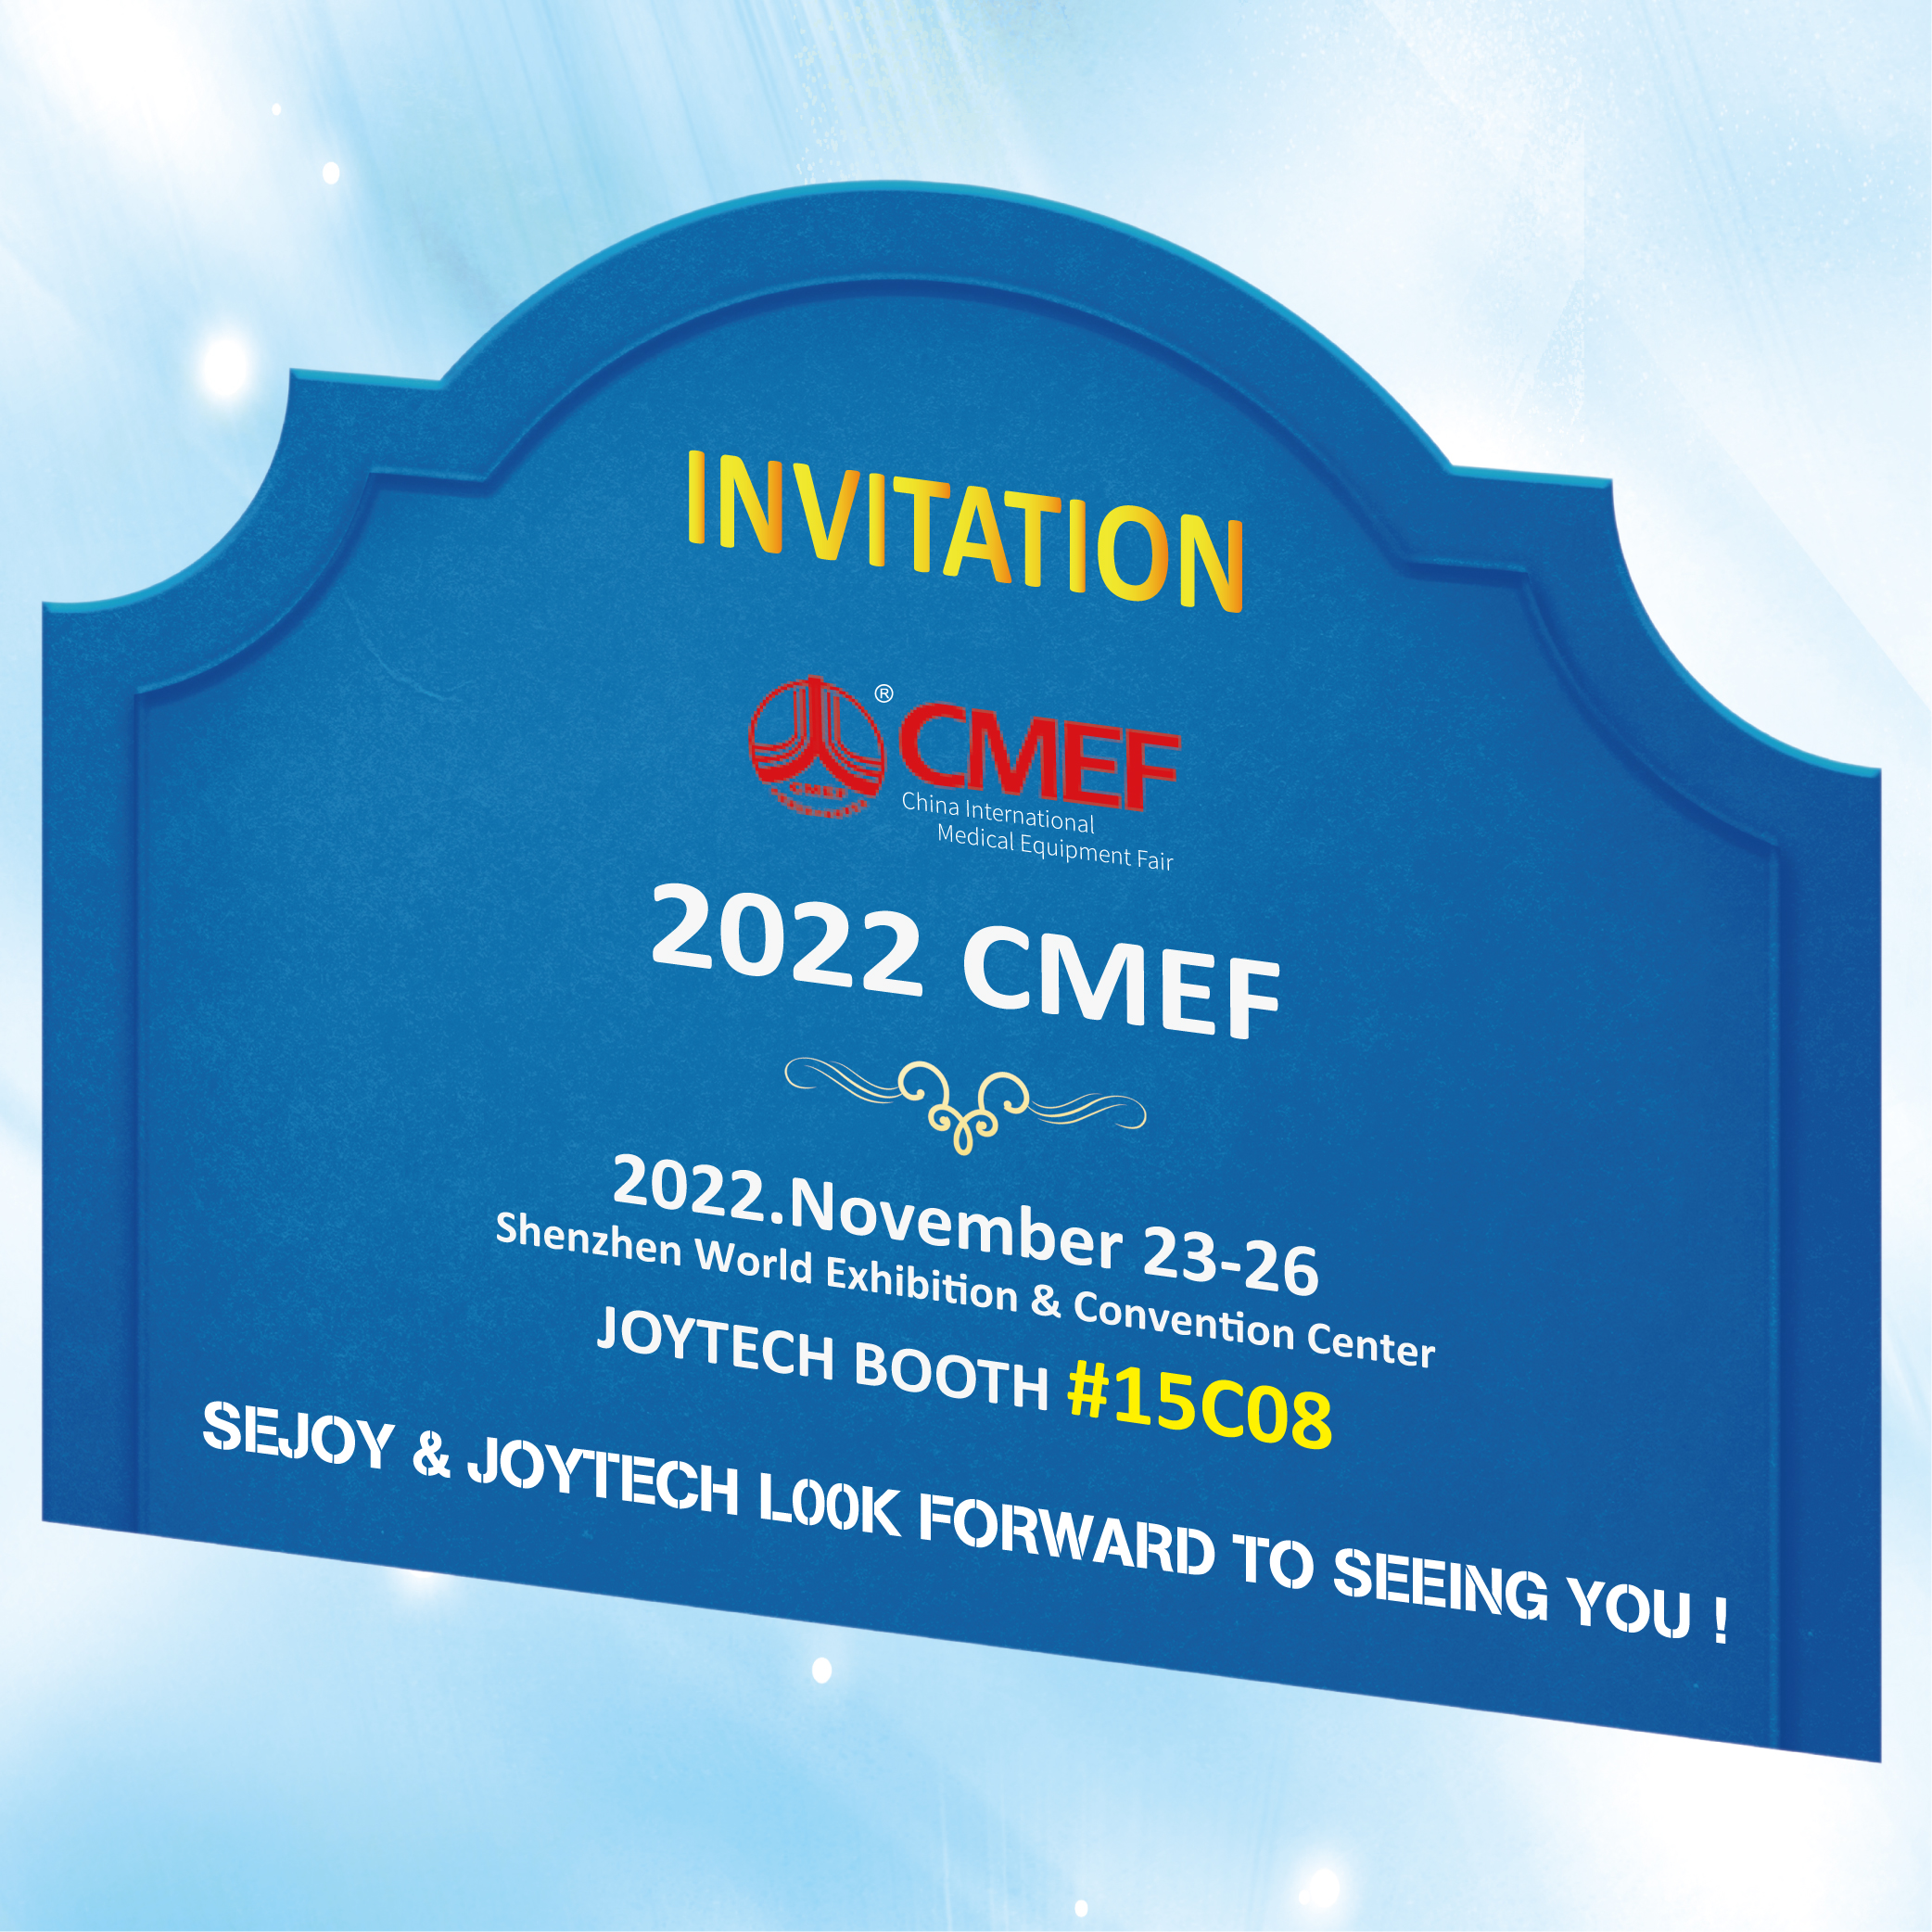 CMEF invitation